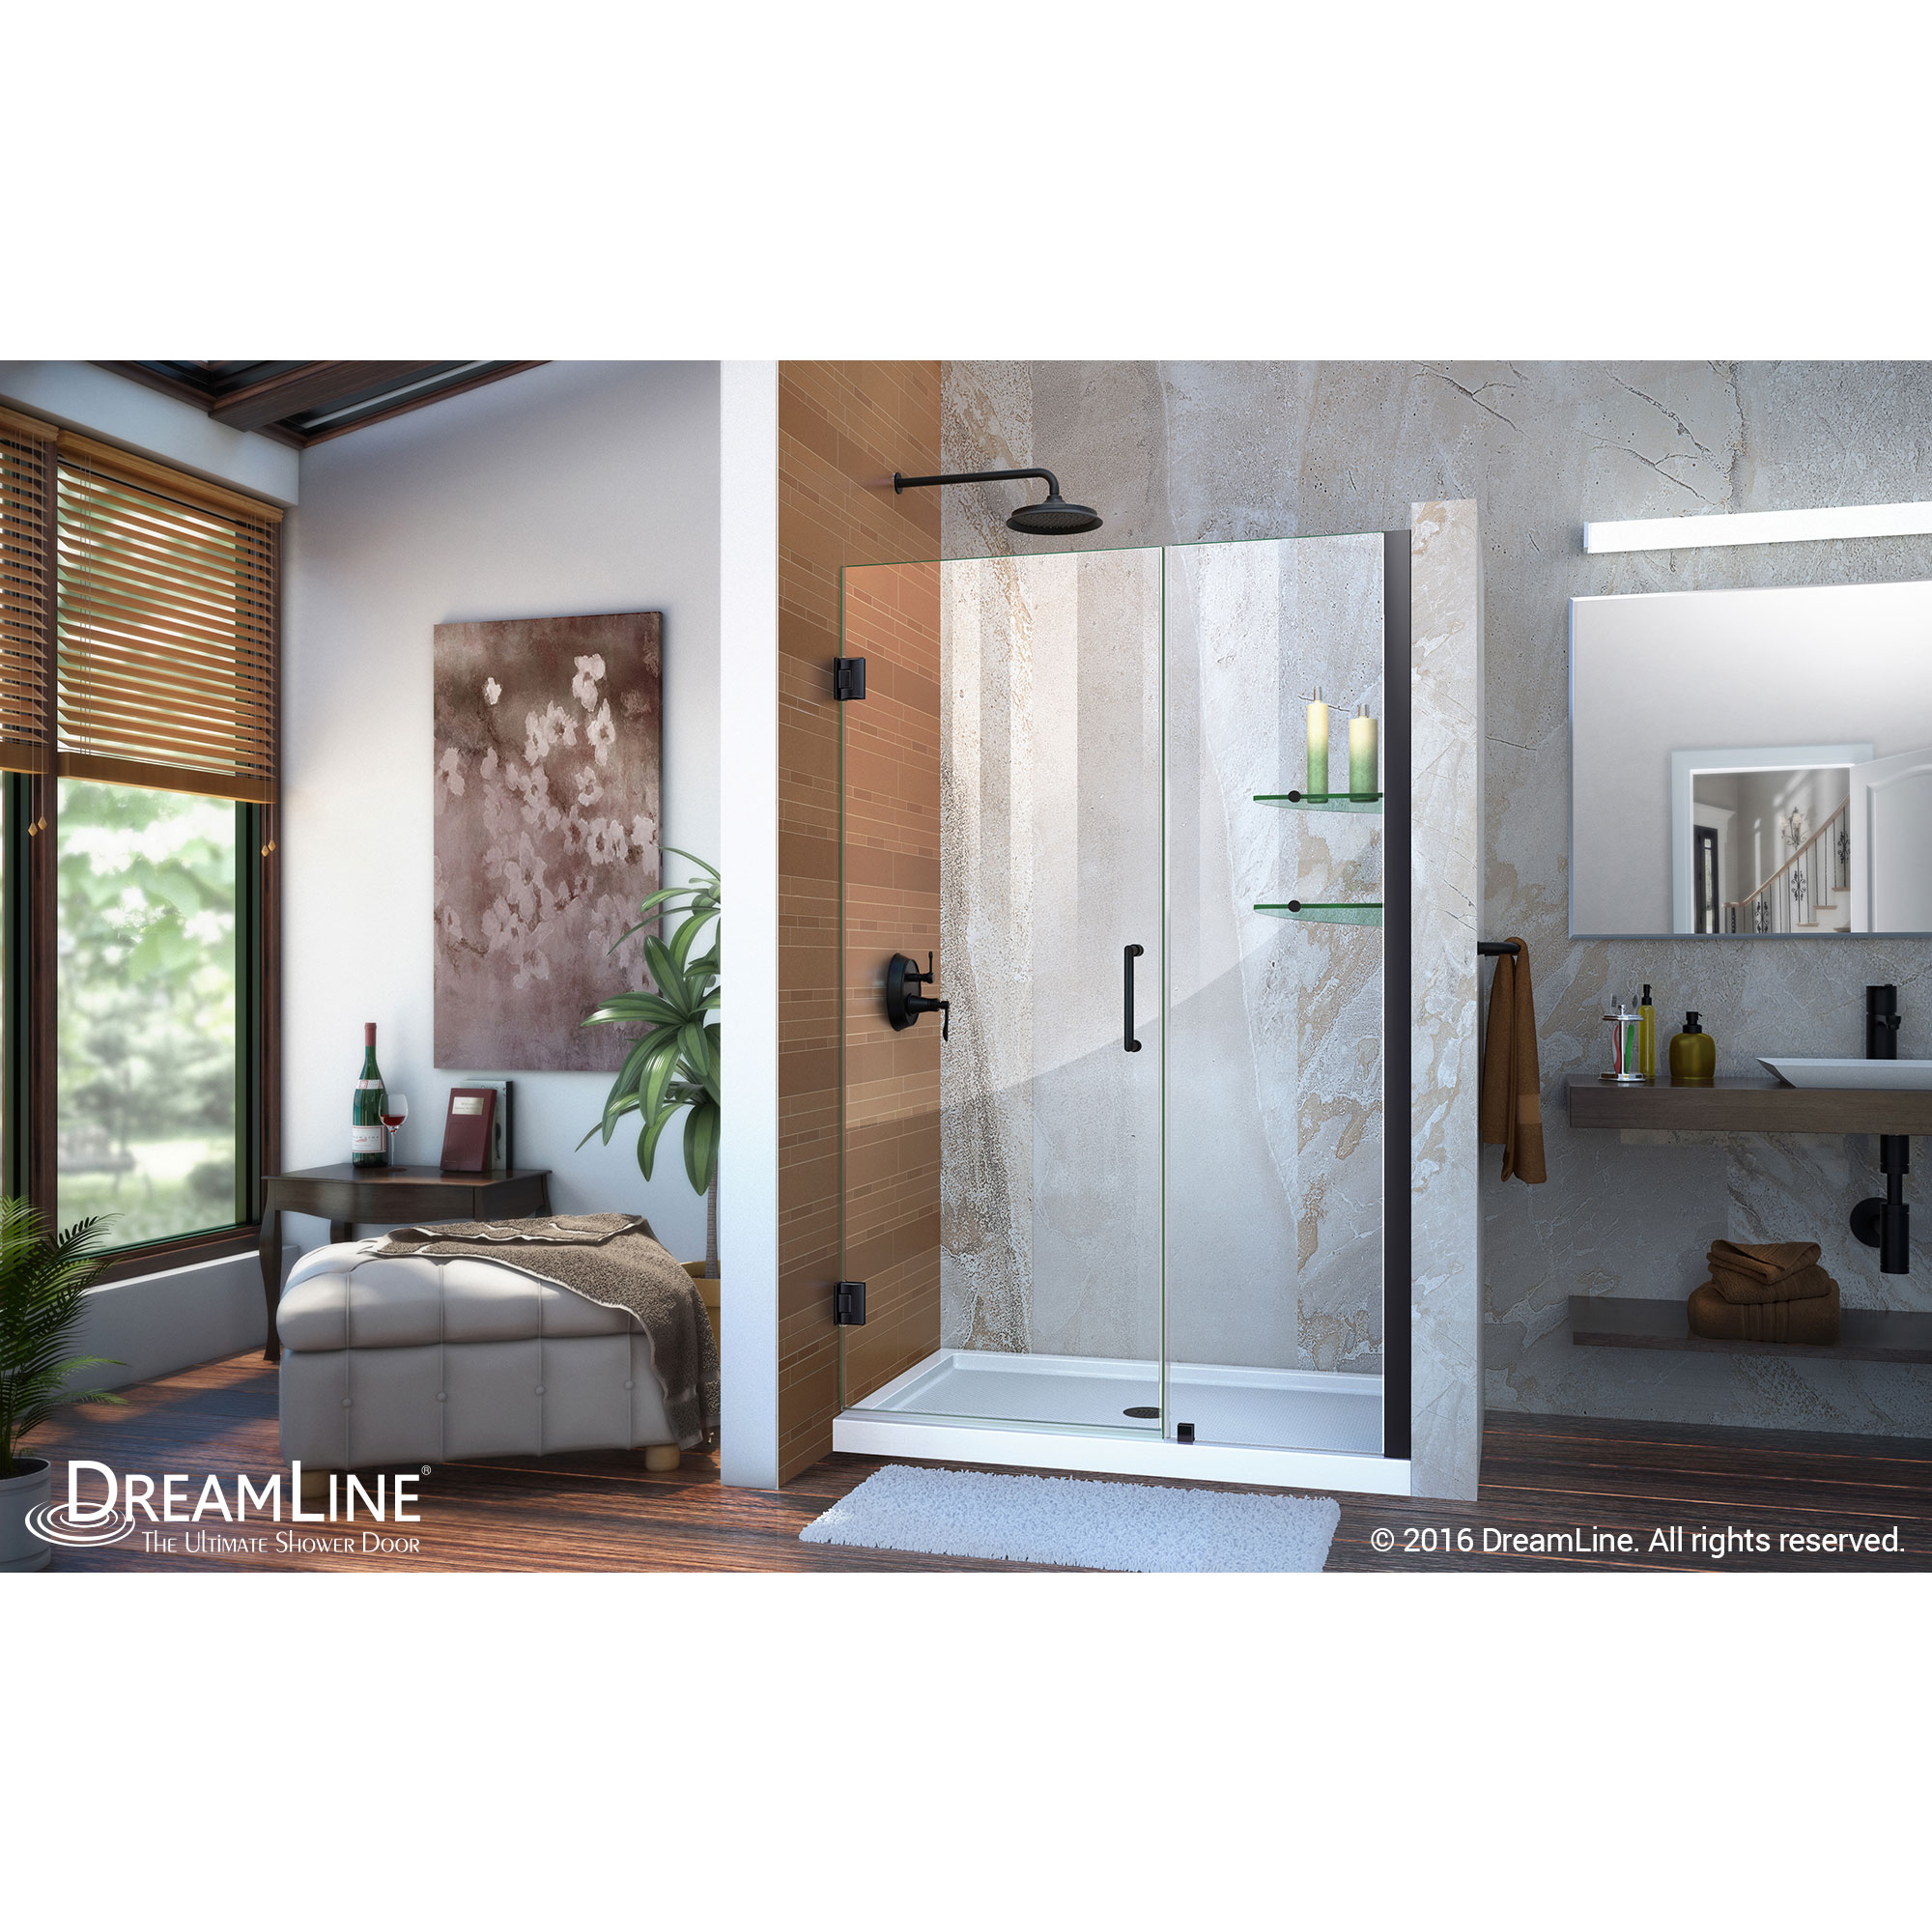 DreamLine Unidoor 41-42 in. W x 72 in. H Frameless Hinged Shower Door with Shelves in Satin Black